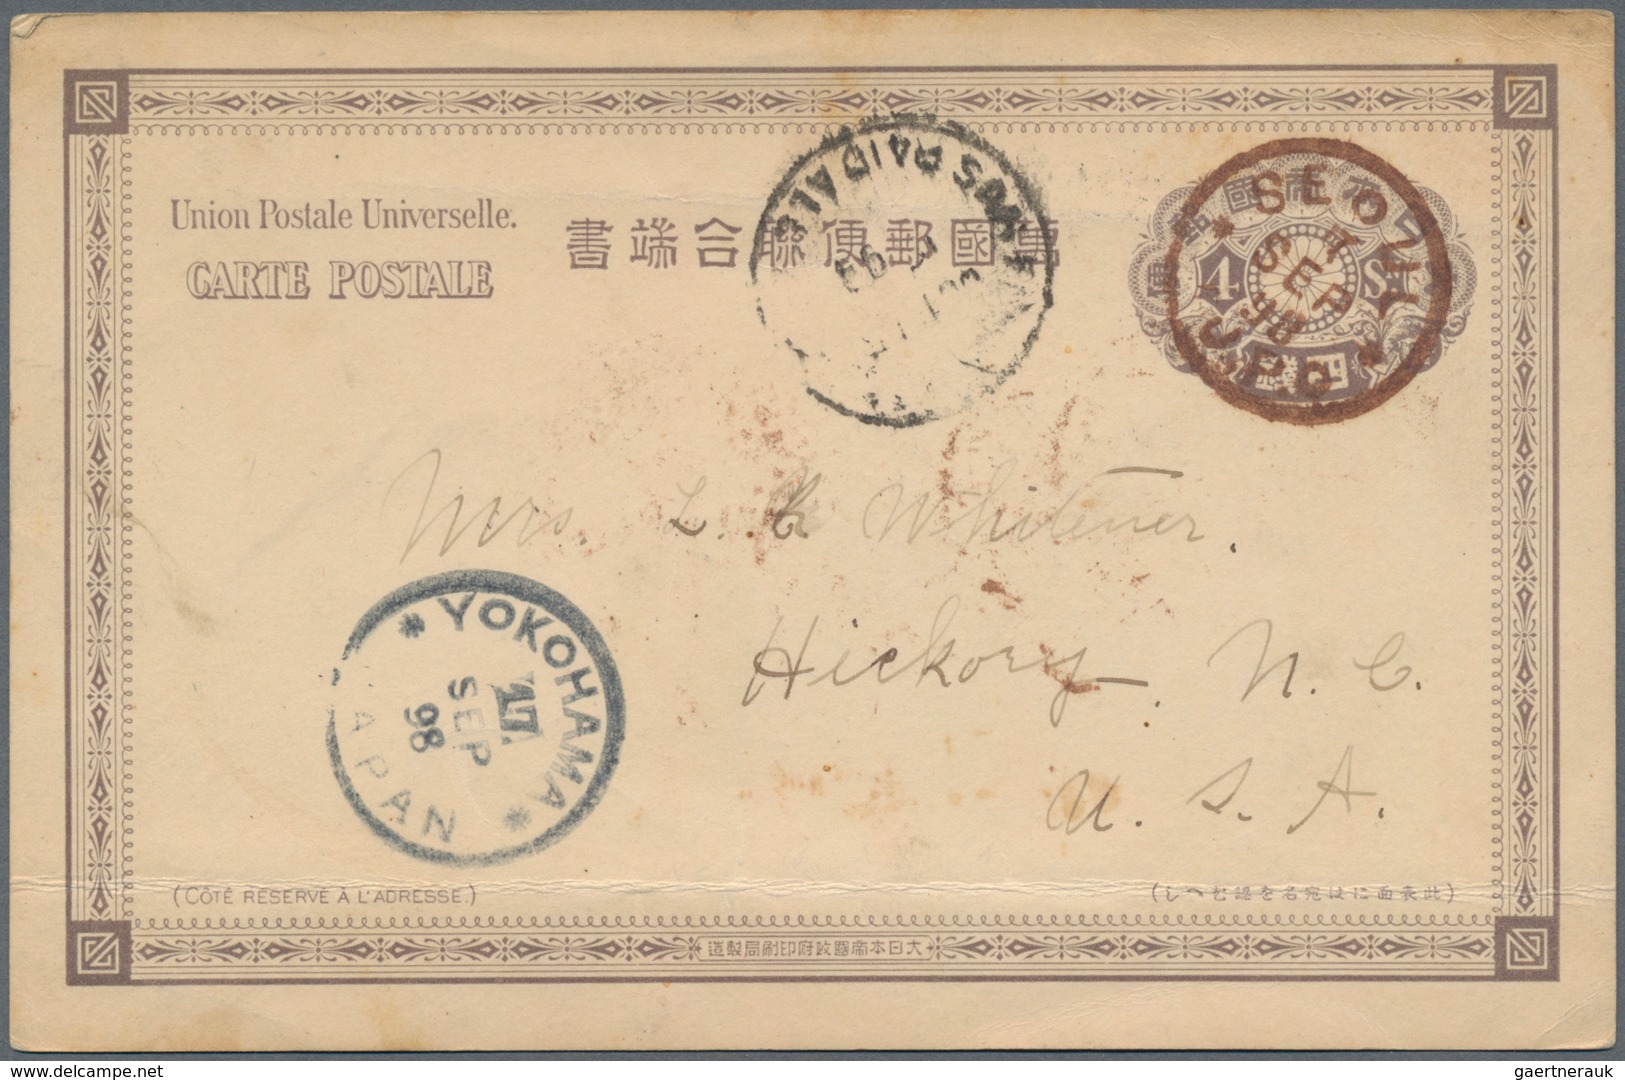 Japanische Post In Korea: 1898, UPU Card 4 S. Violet Brown Canc. Brown "SEOUL 7 SEP 98 I.J.P.O." Via - Militärpostmarken